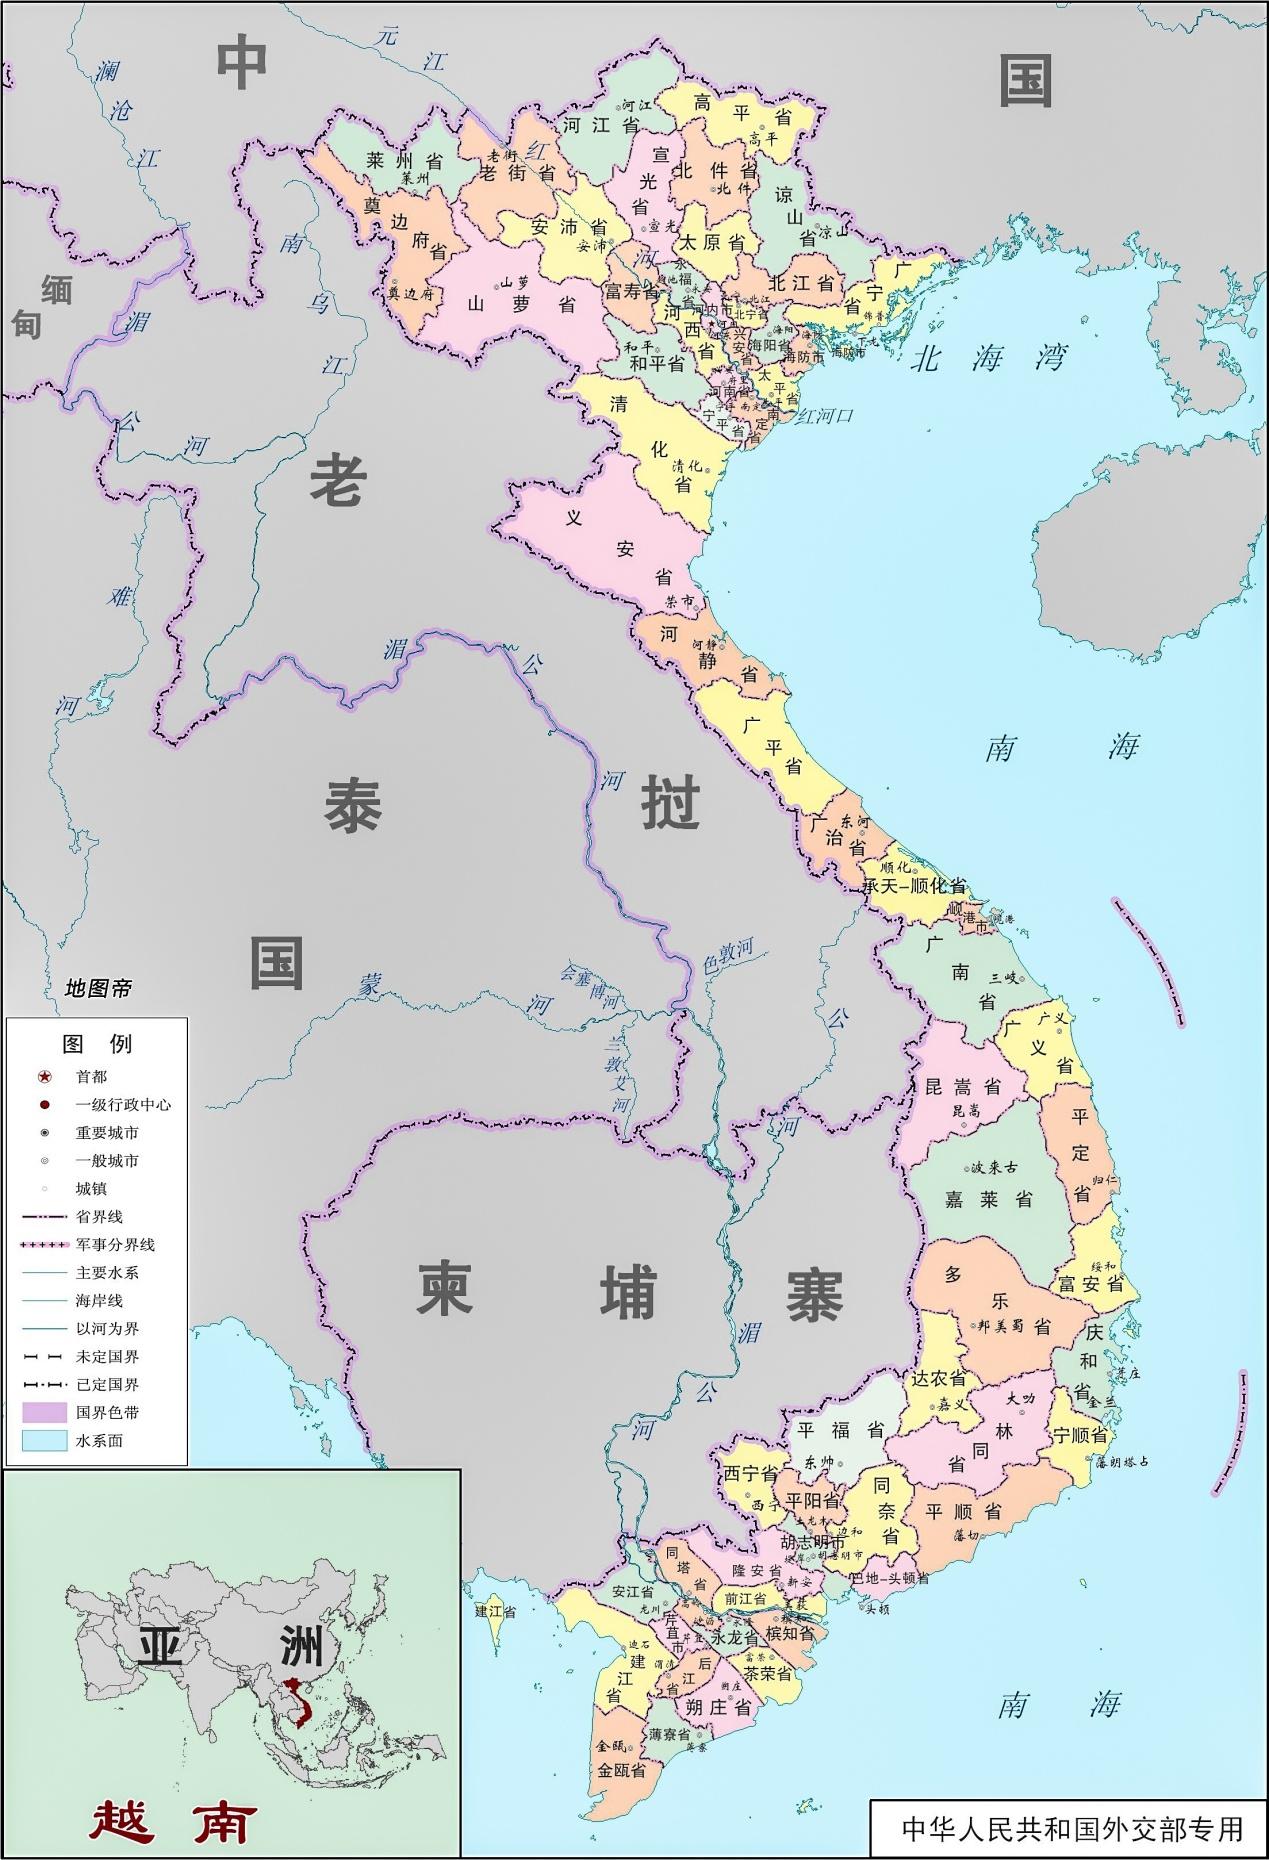 中国统治数百年的日南,在越南哪儿? 